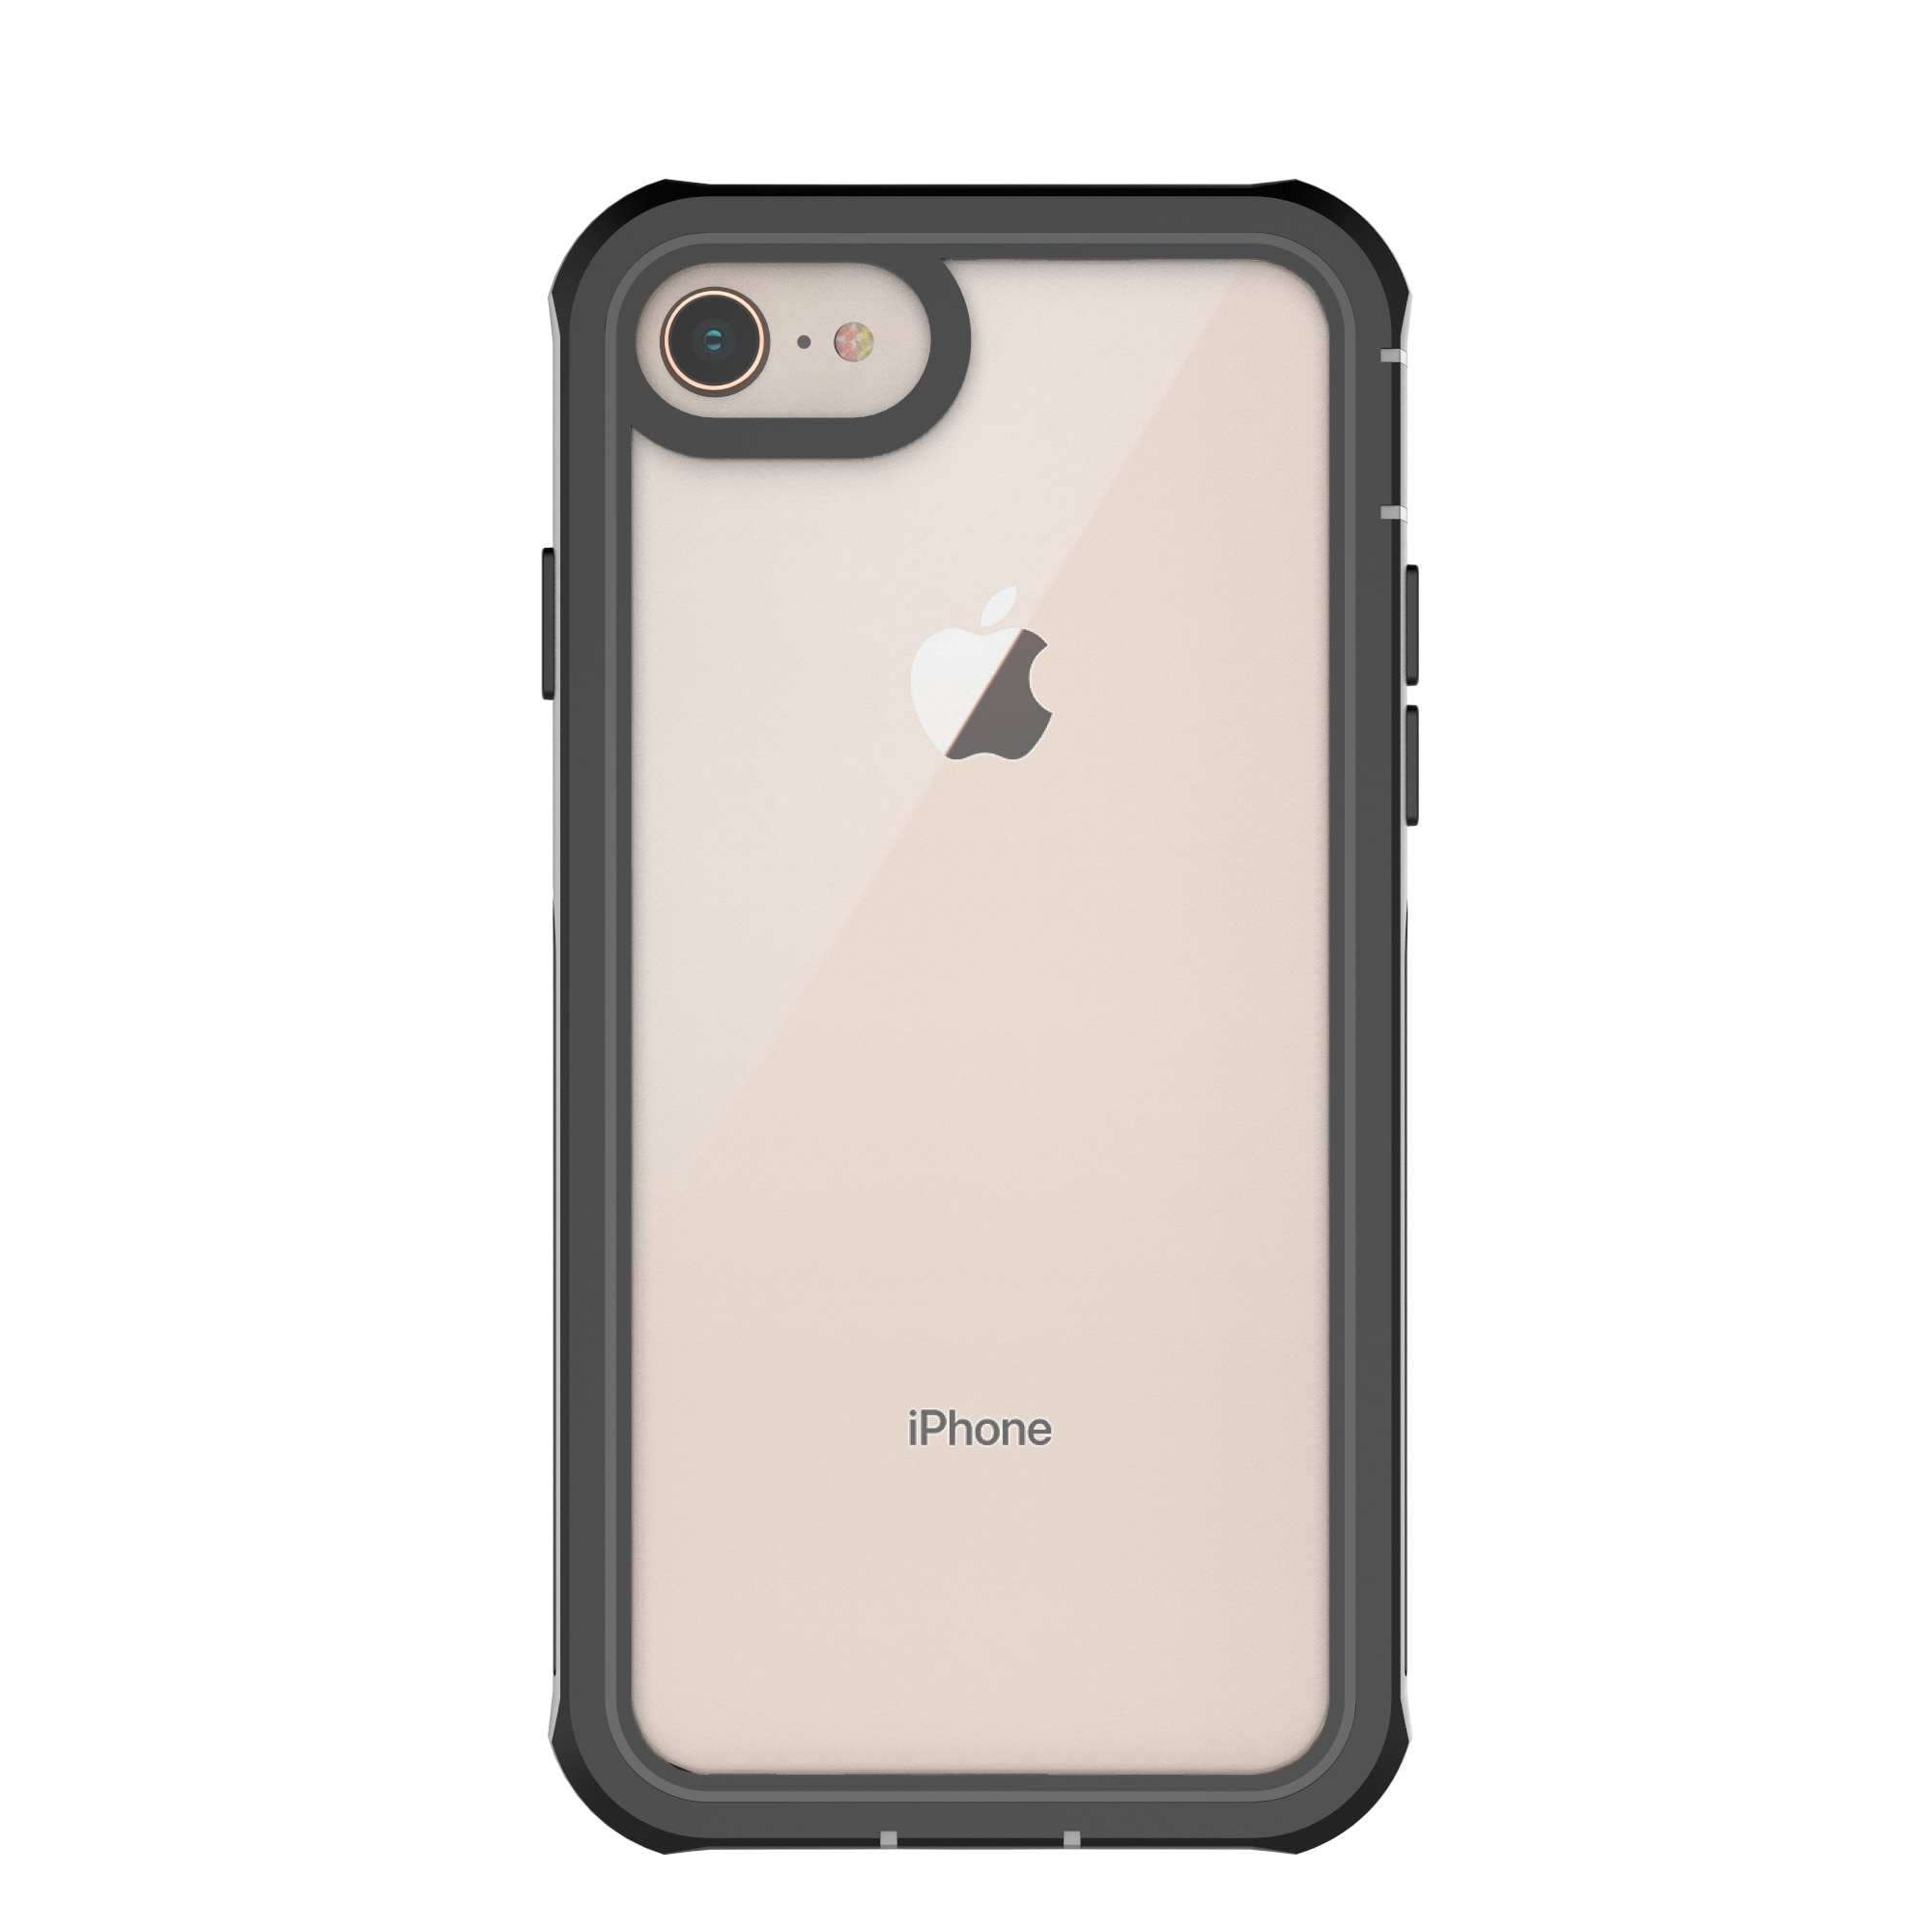 iPhone 7 Premium Full Protection Case Black